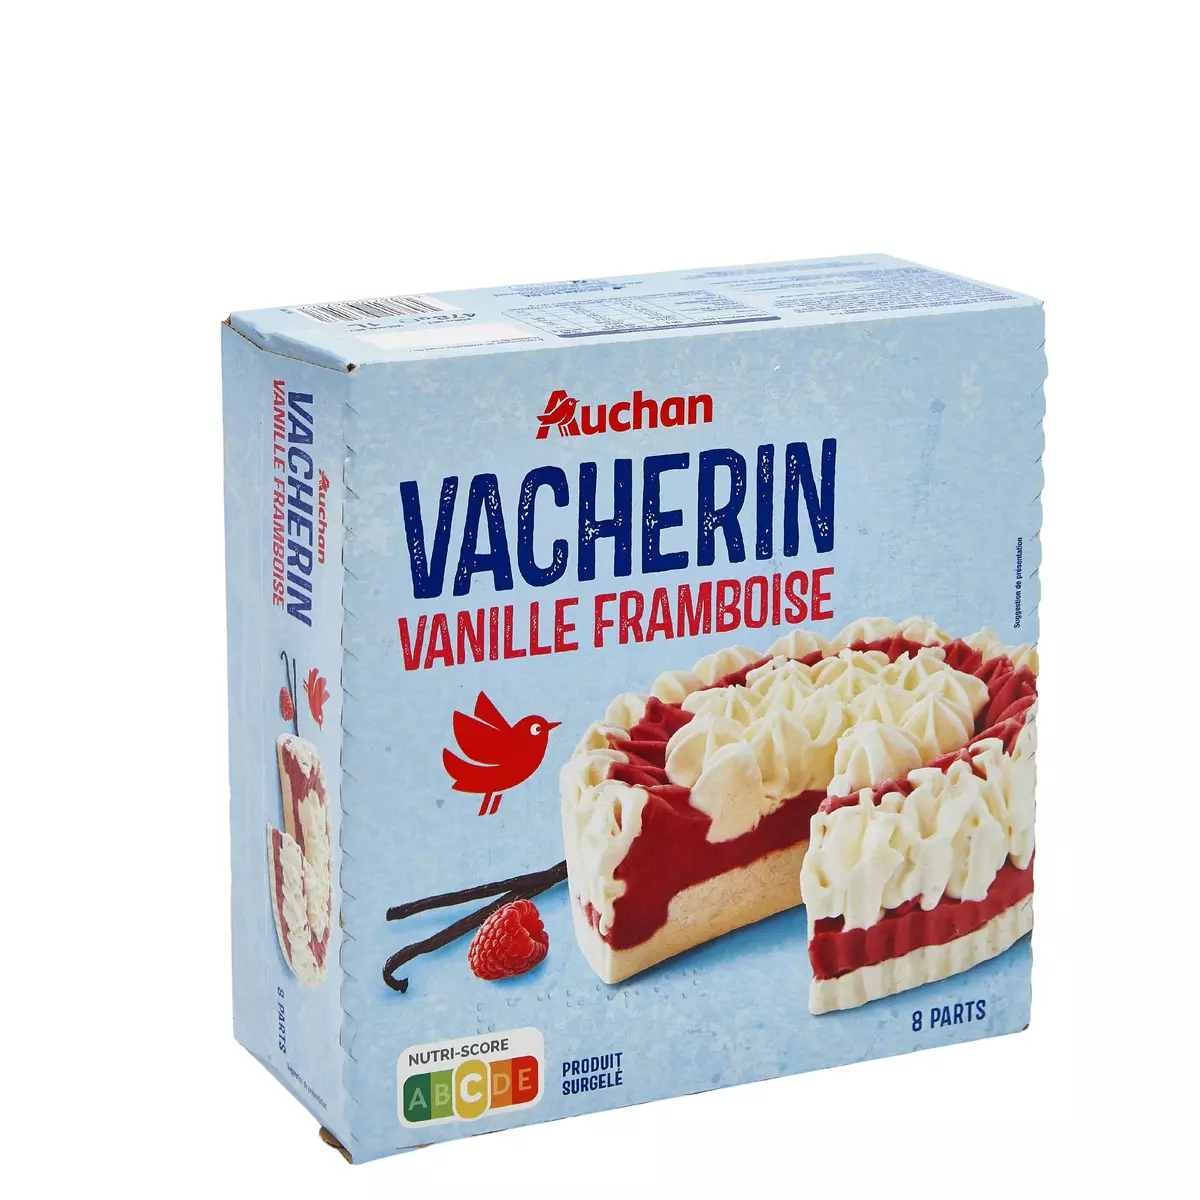 AUCHAN Vacherin vanille framboise 8 parts 478g